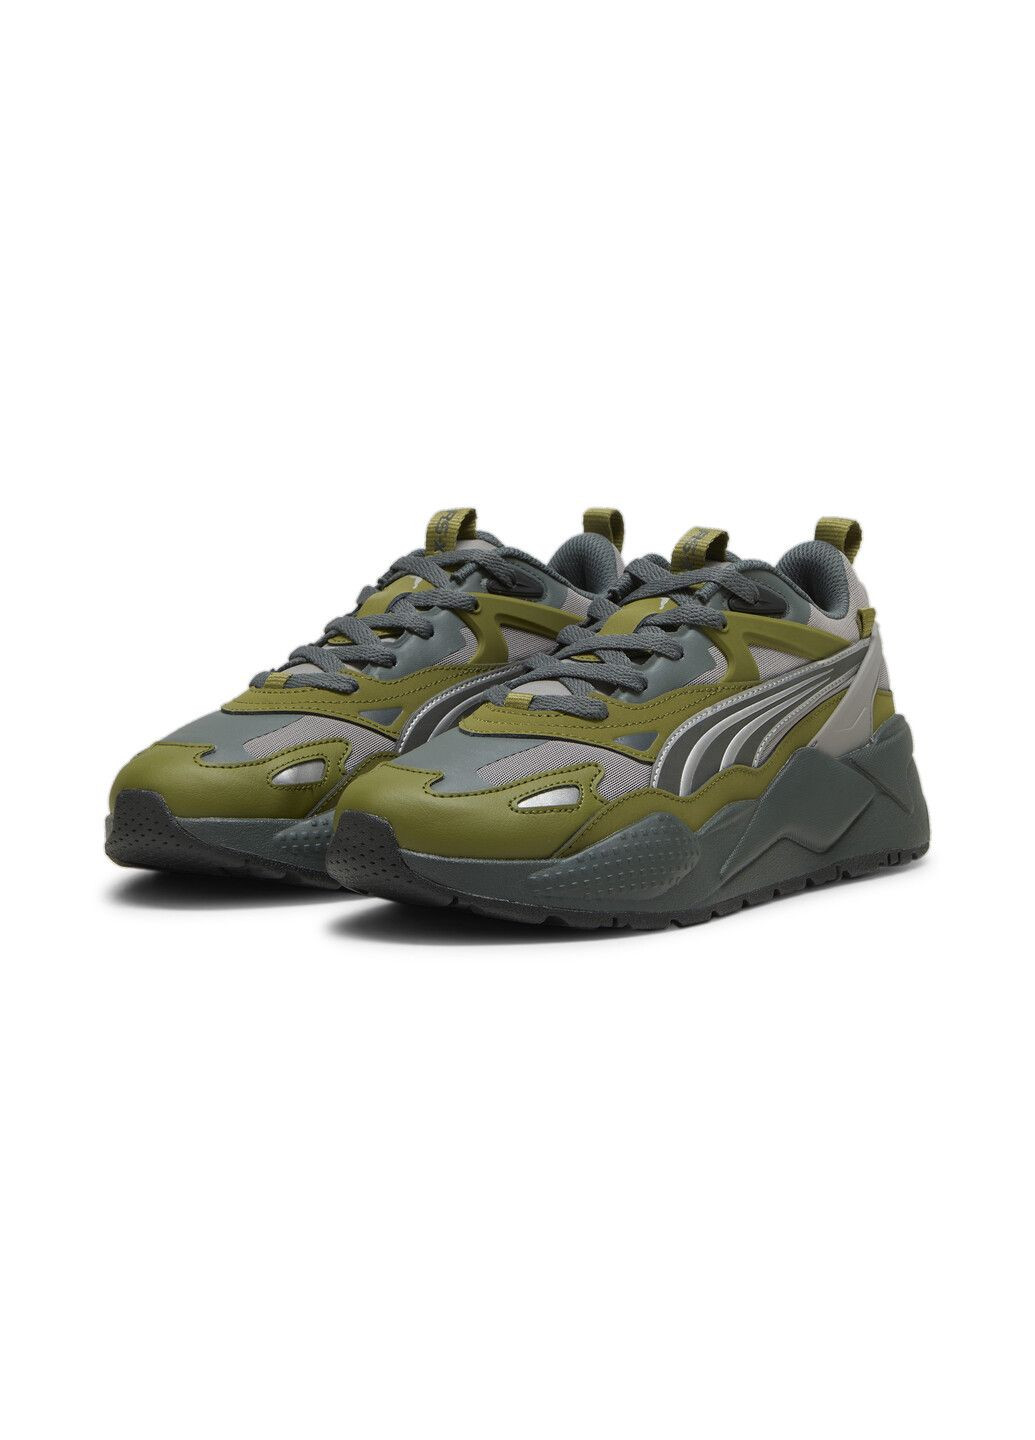 Серые всесезонные кроссовки rs-x efekt reflective sneakers Puma